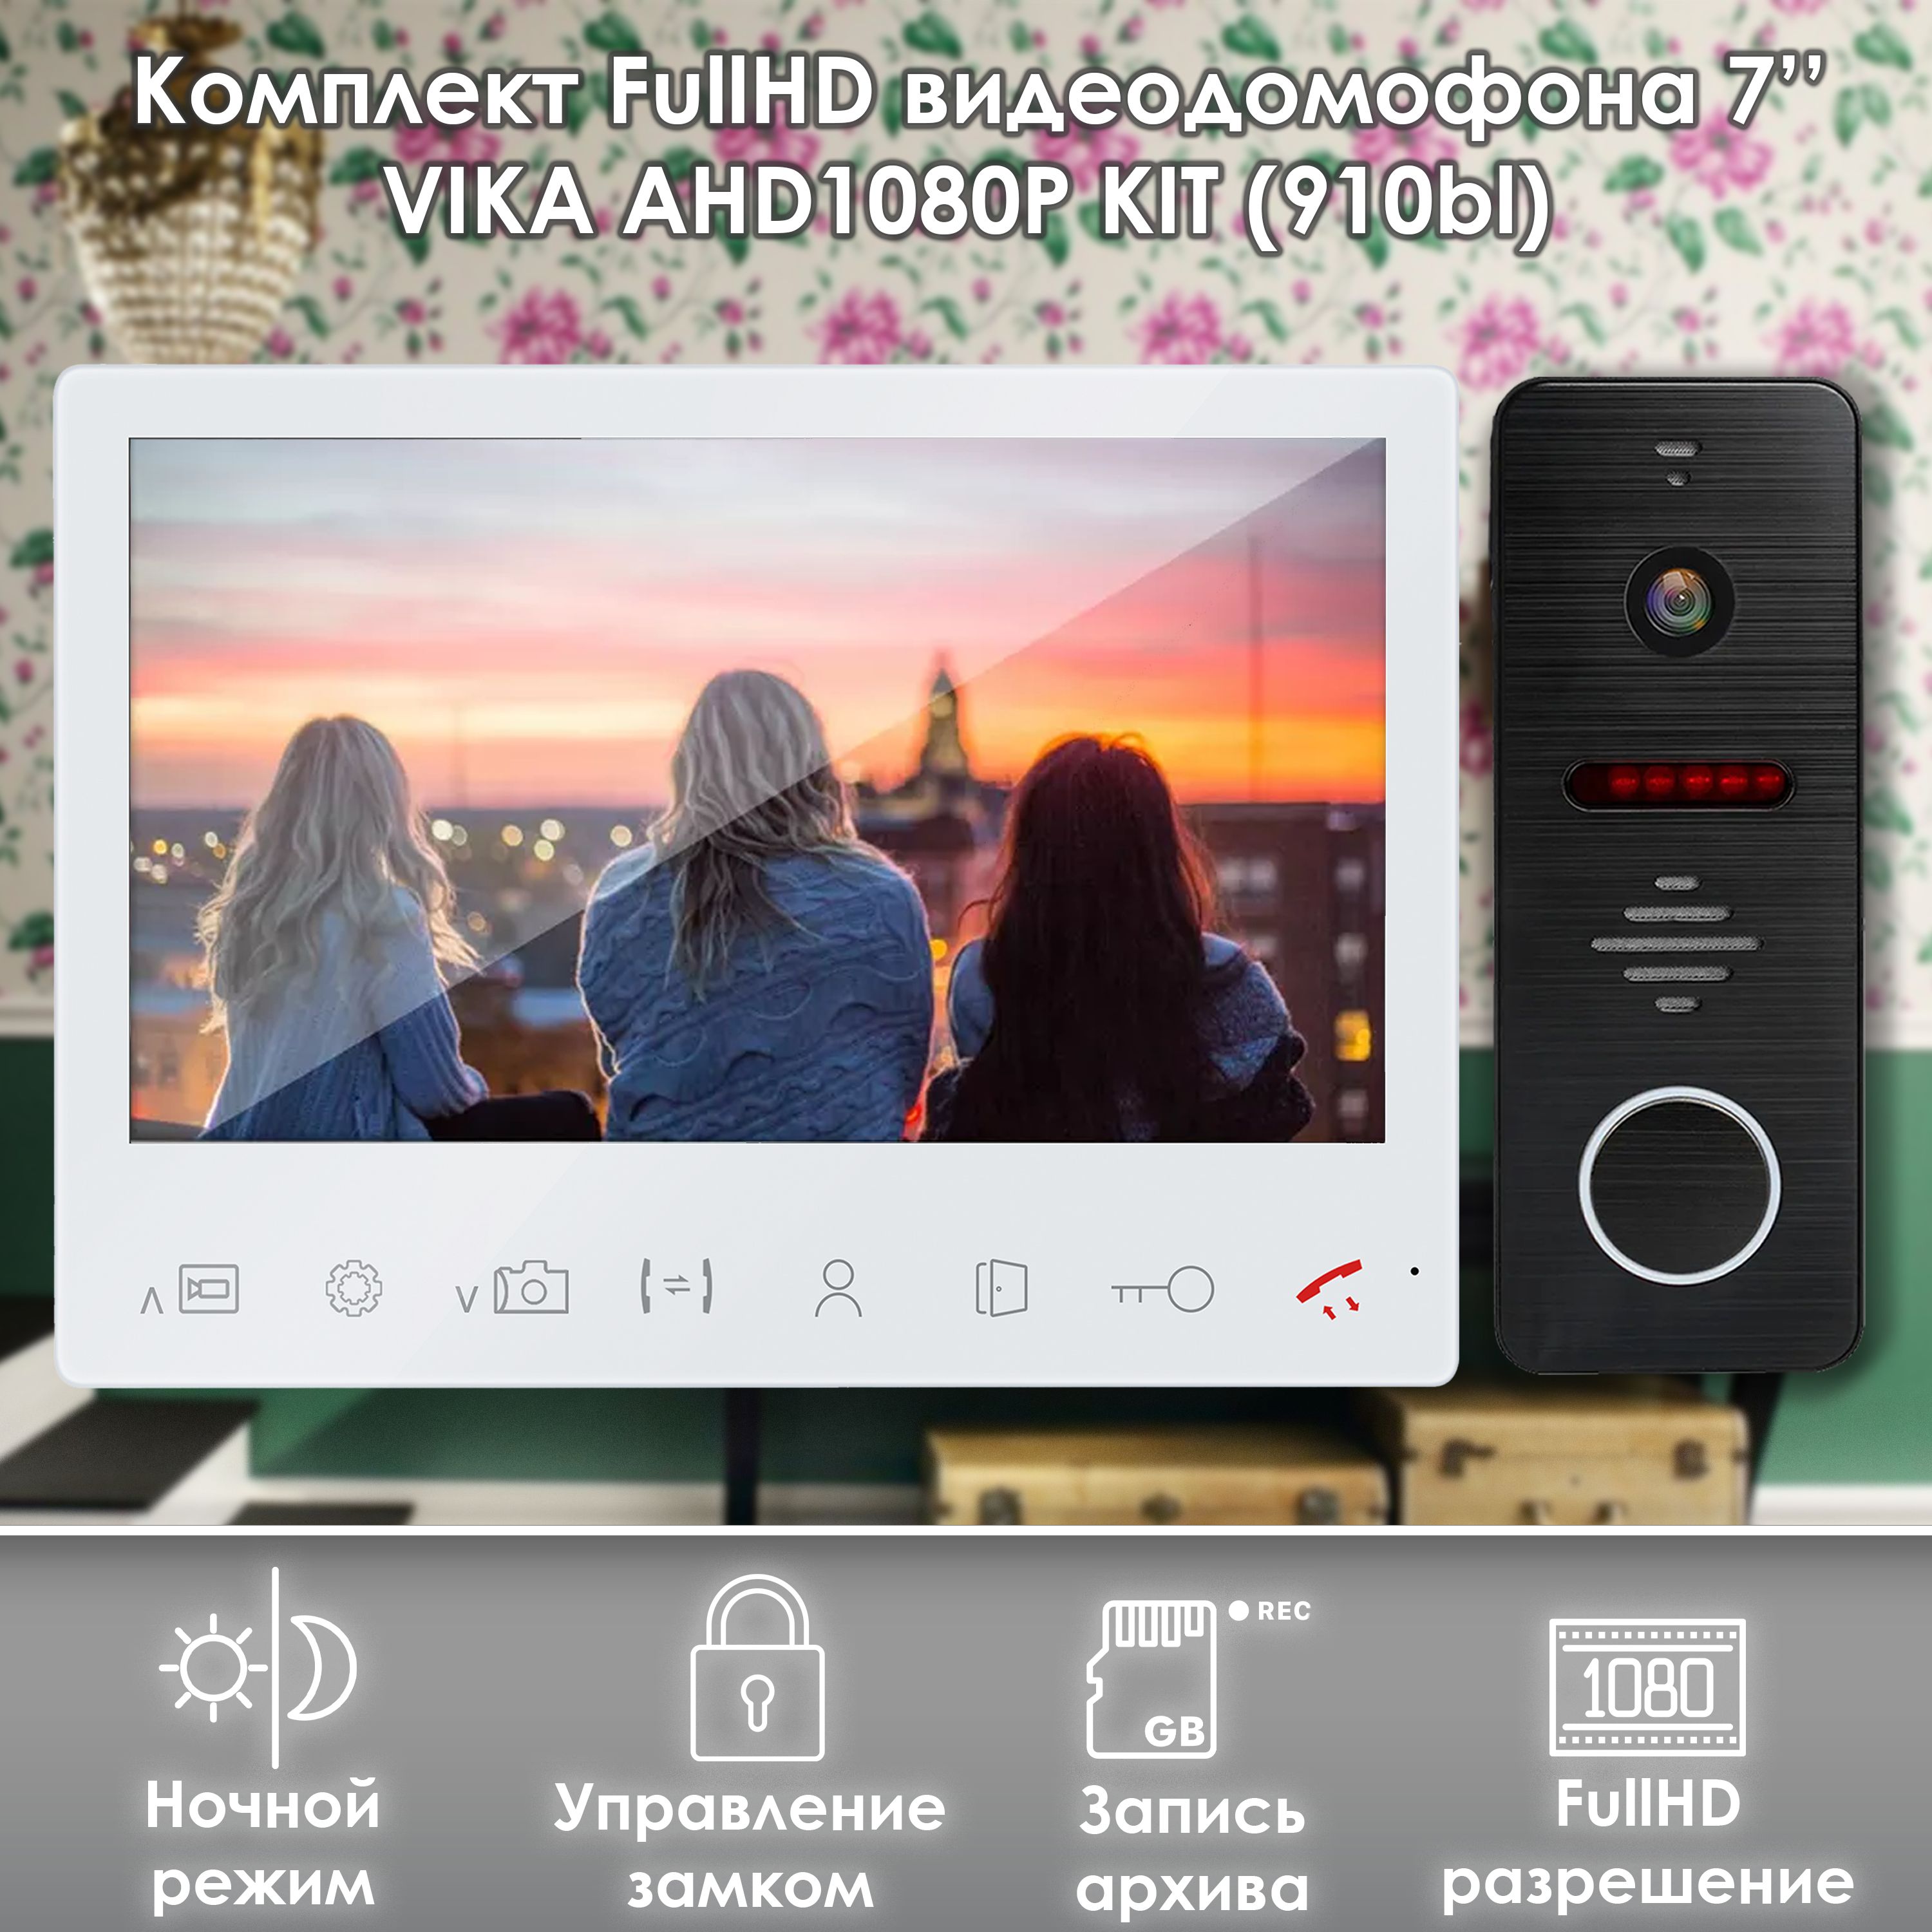 Комплект видеодомофона Alfavision Vika-KIT (910bl) Full HD 7 дюймов комплект видеодомофона alfavision olesya wi fi ahd1080p full hd 910bl белый 7 дюймов